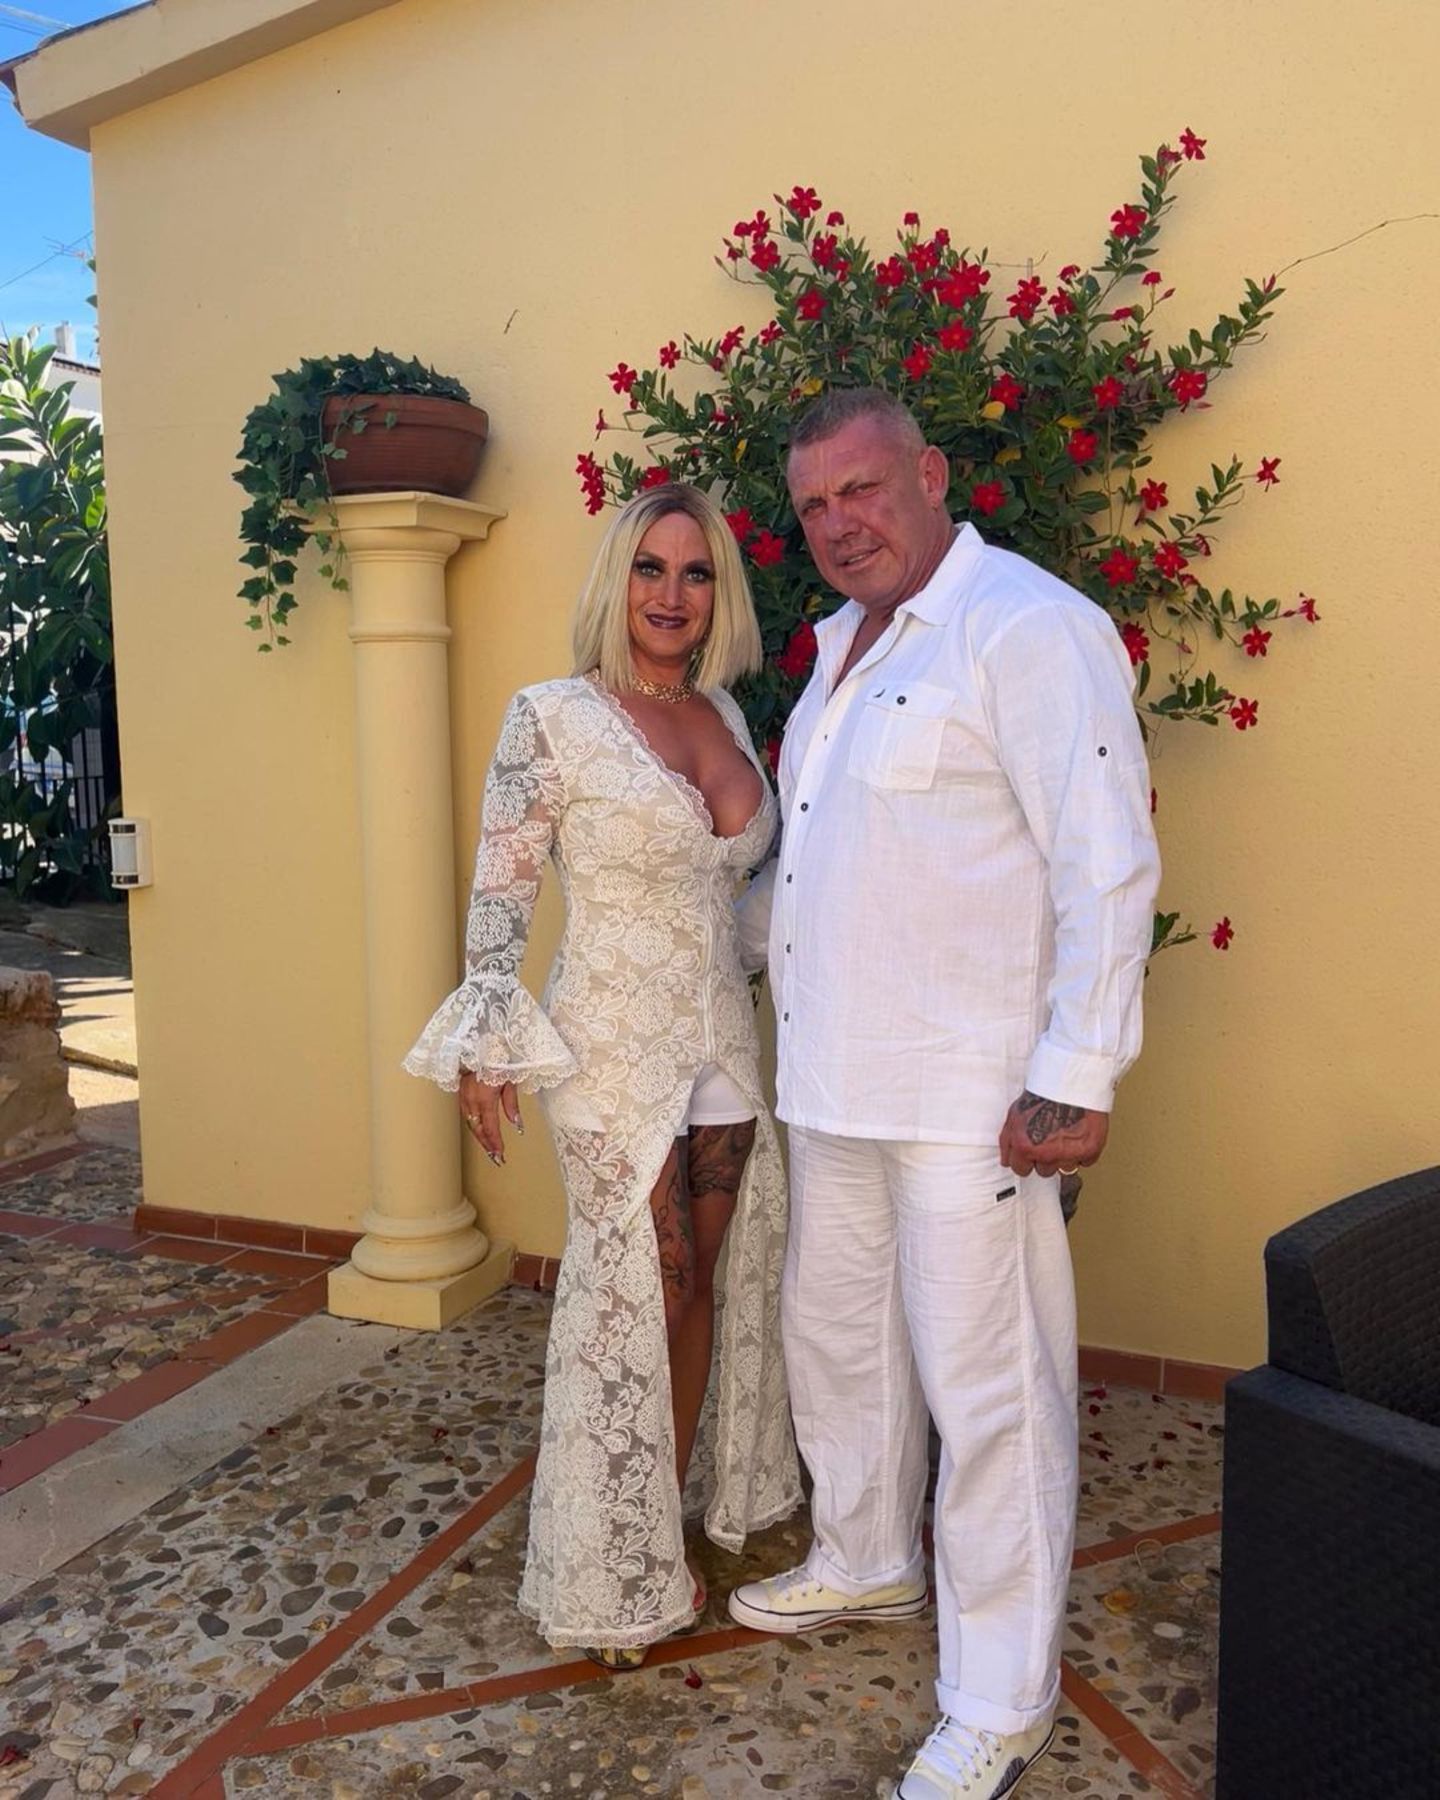 Lisha und Lou feiern Hochzeit auf Mallorca und ihr Fest ist alles andere als traditionell. Anstatt der Braut die Farbe Weiß zu überlassen, sind die Gäste dazu angehalten im stylischen White-Look zu erscheinen. Caro und Andreas Robens lassen sich das nicht zweimal sagen und schlüpfen in Spitze und Leinen. 